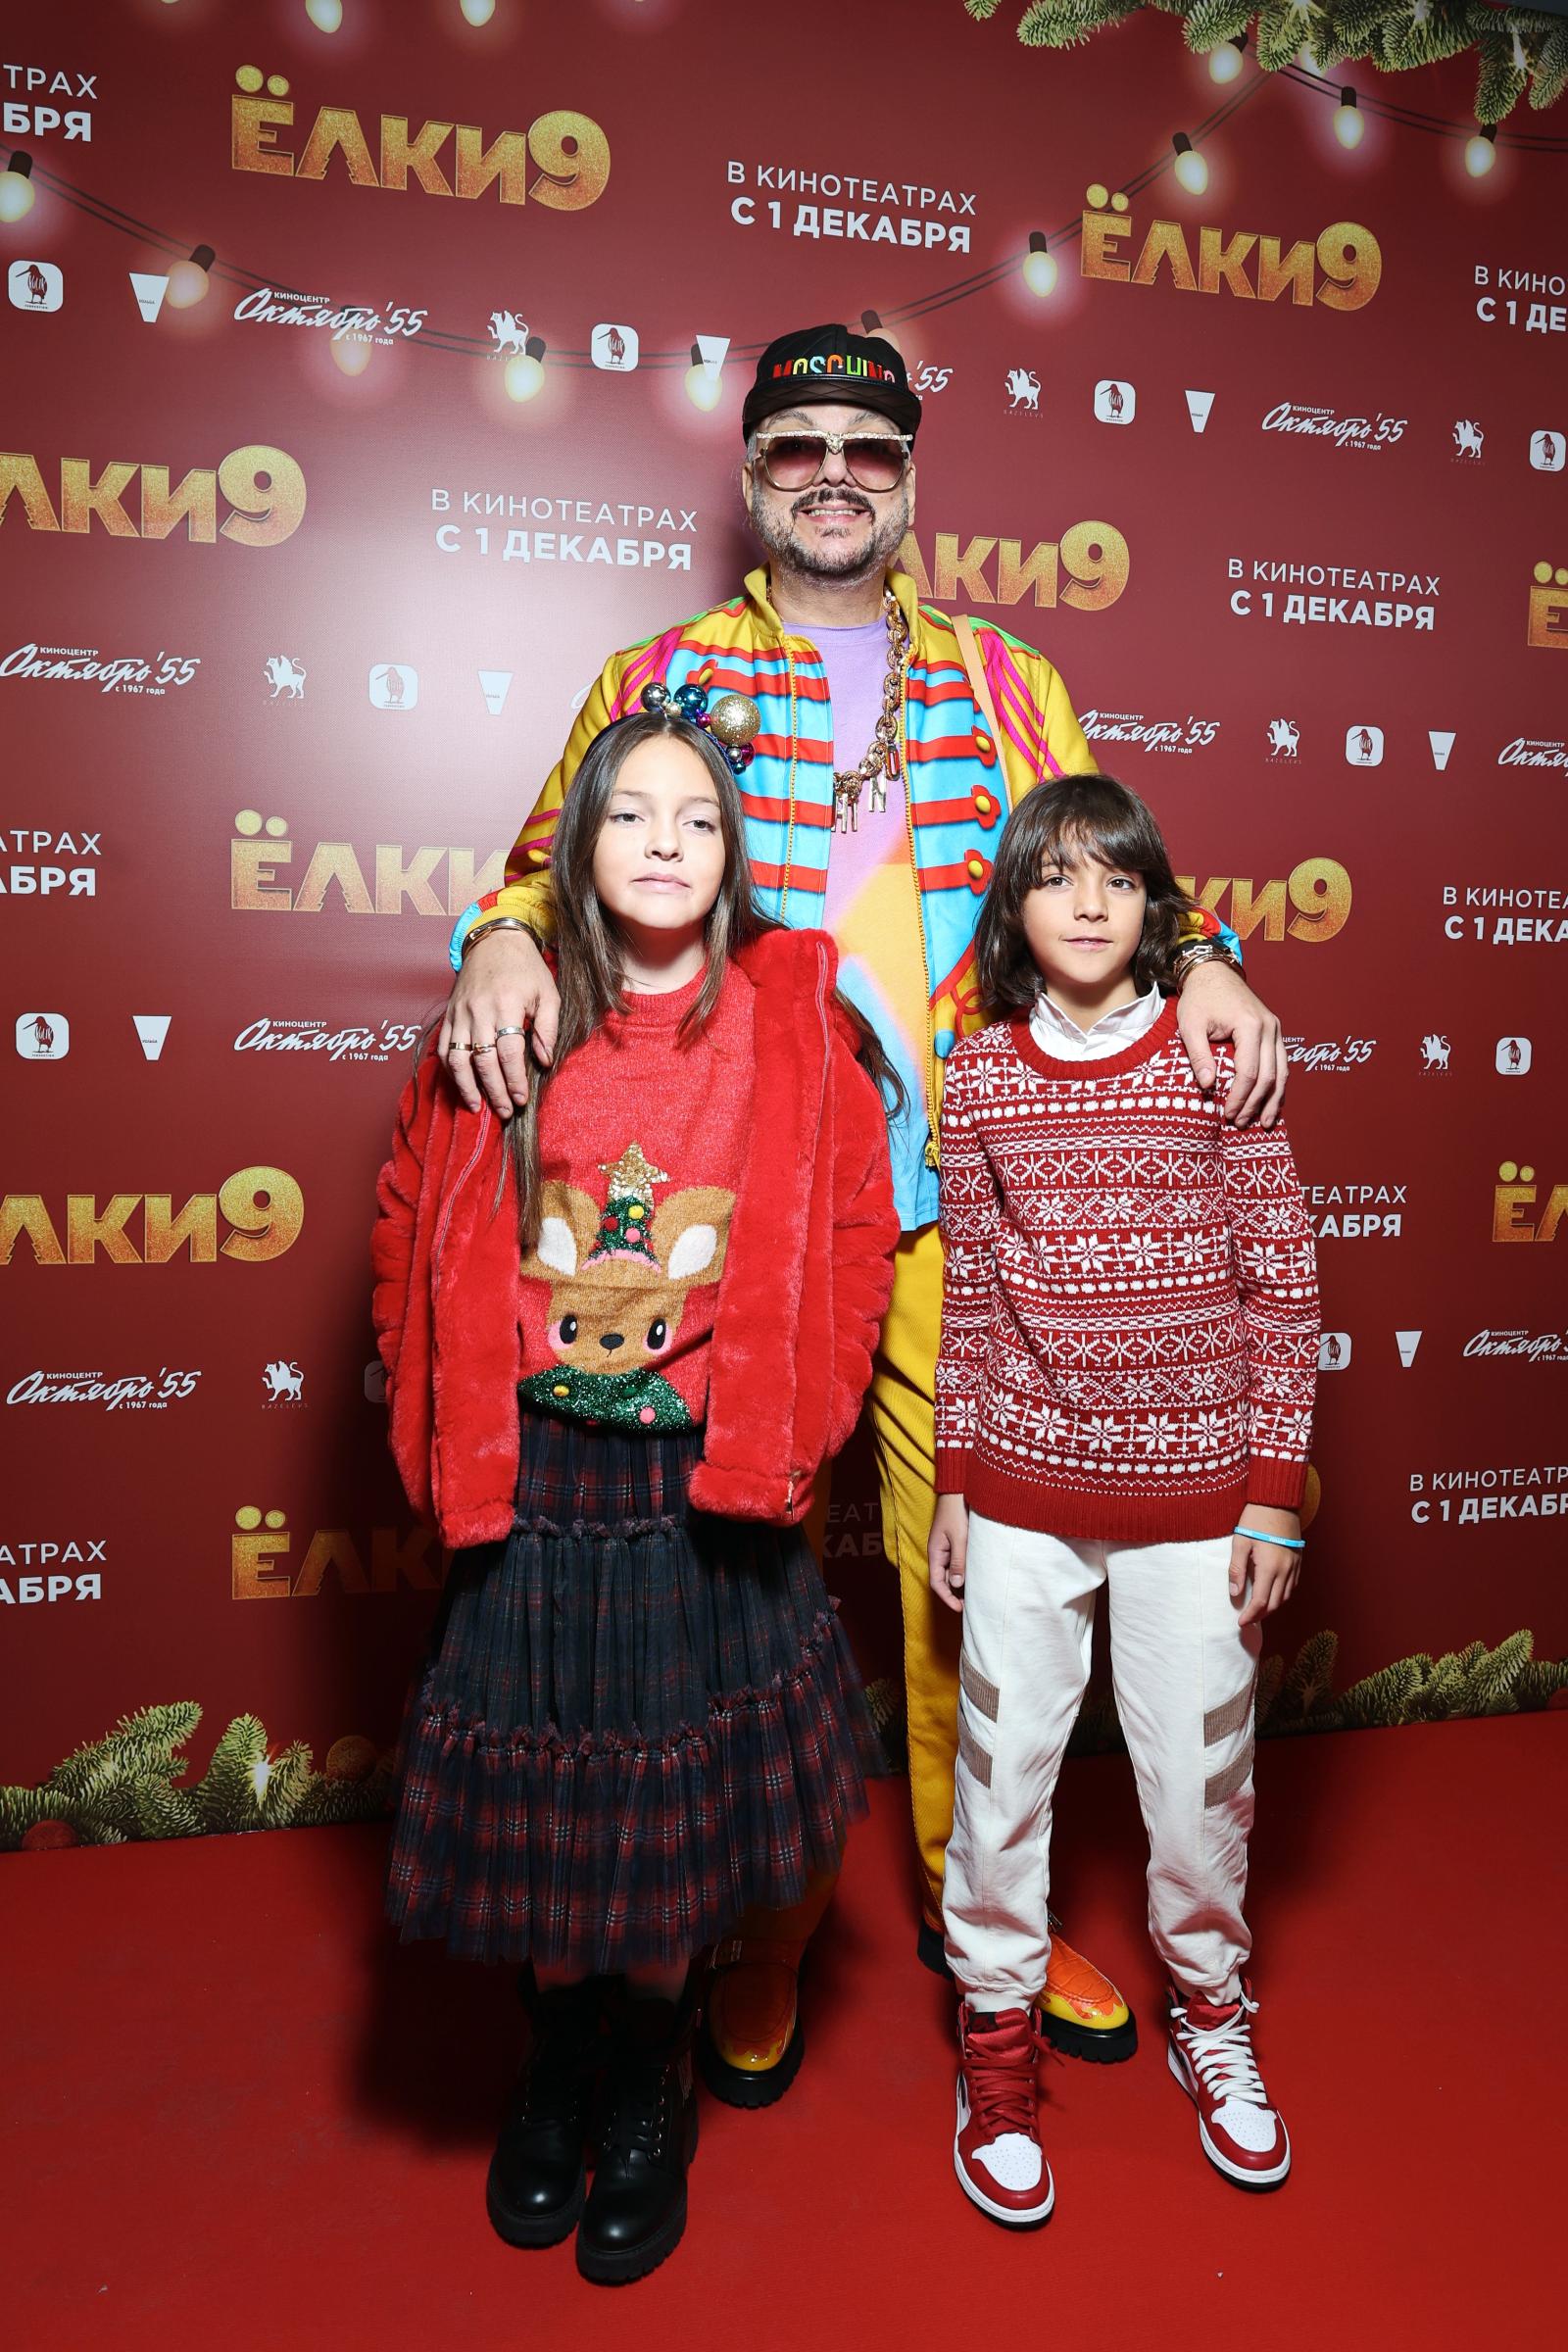 Филипп Киркоров с детьми 